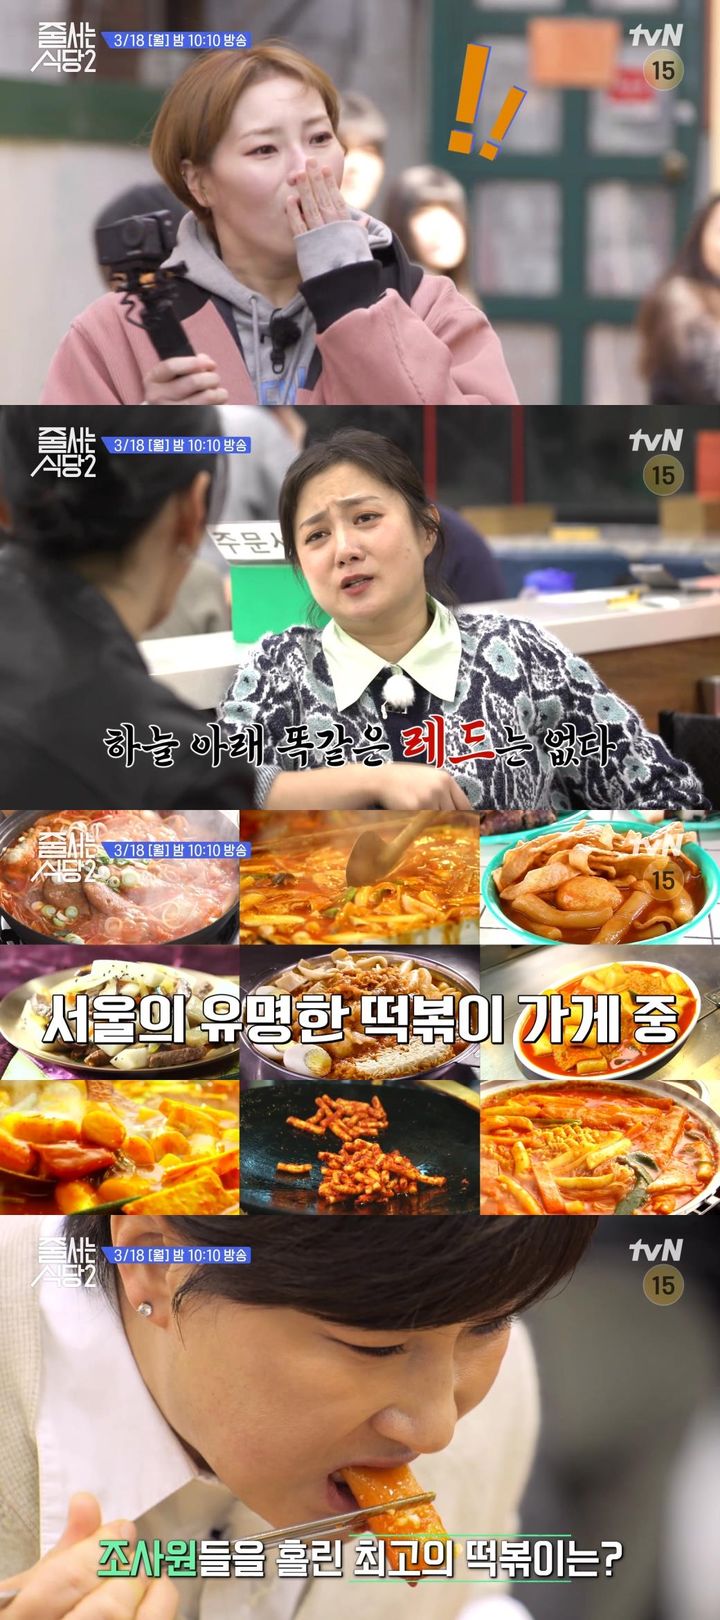 '줄식당2' 서울 3대 떡볶이 맛집 분석